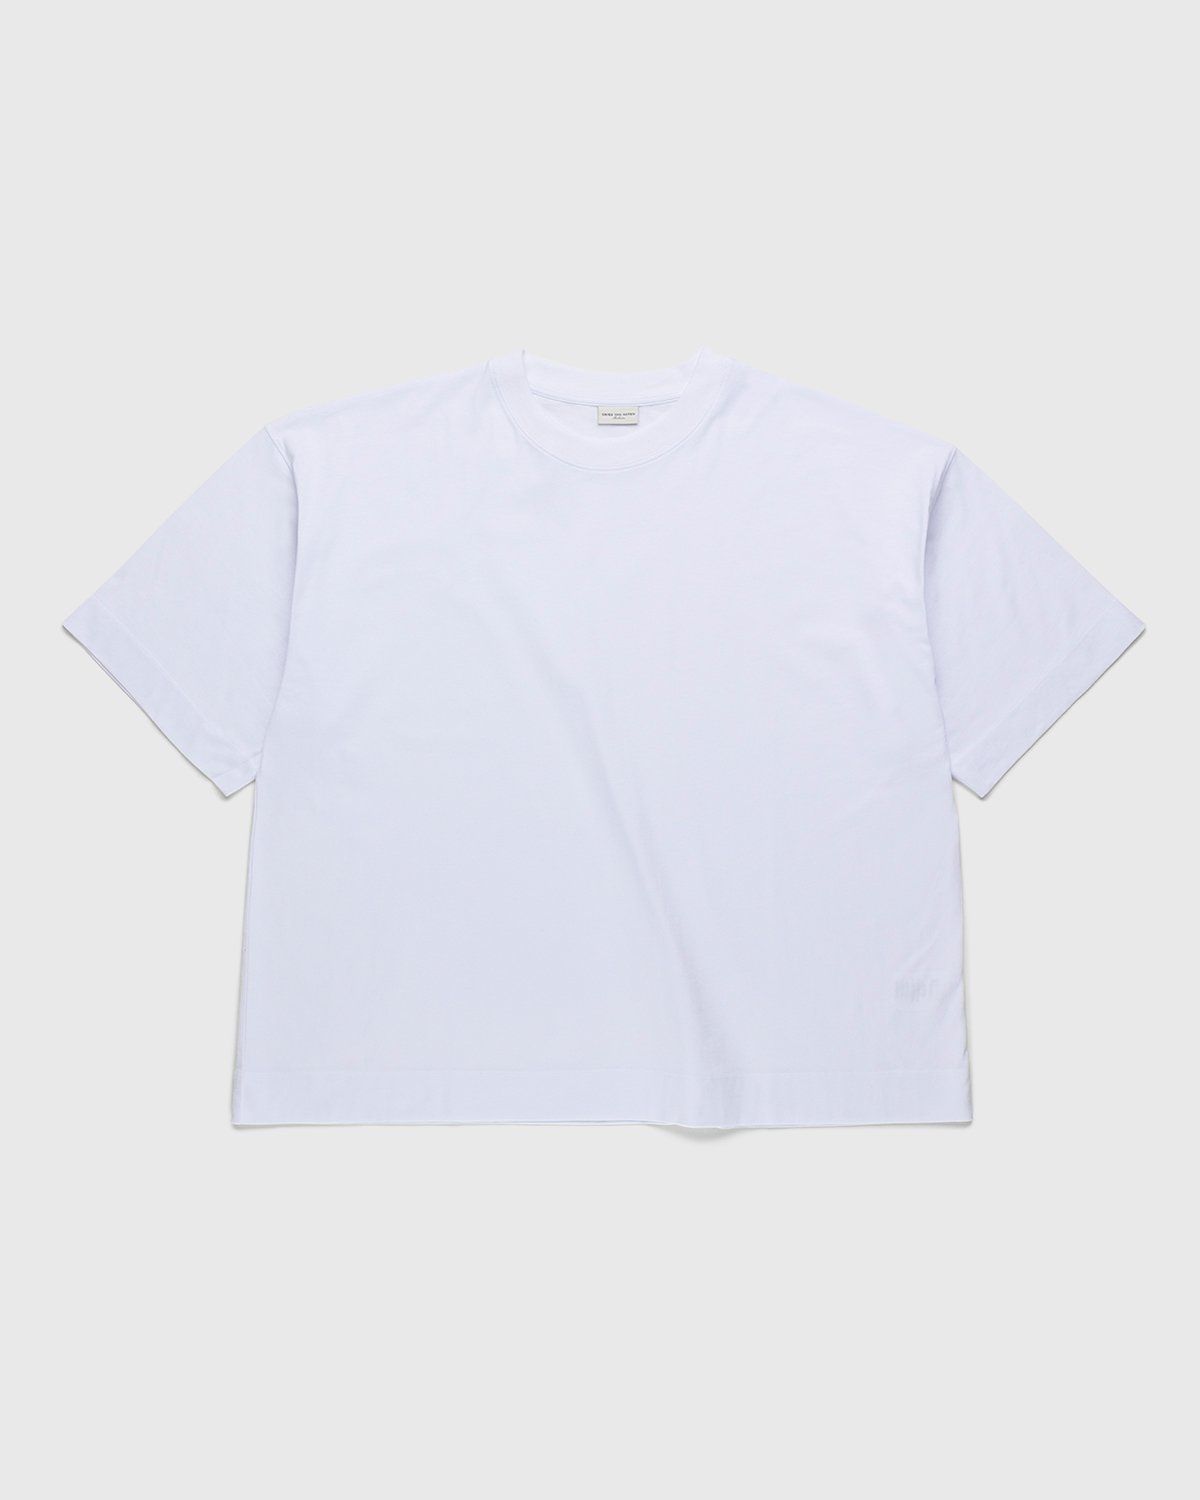 Dries van Noten – Hen Oversized T-Shirt White - Tops - White - Image 2